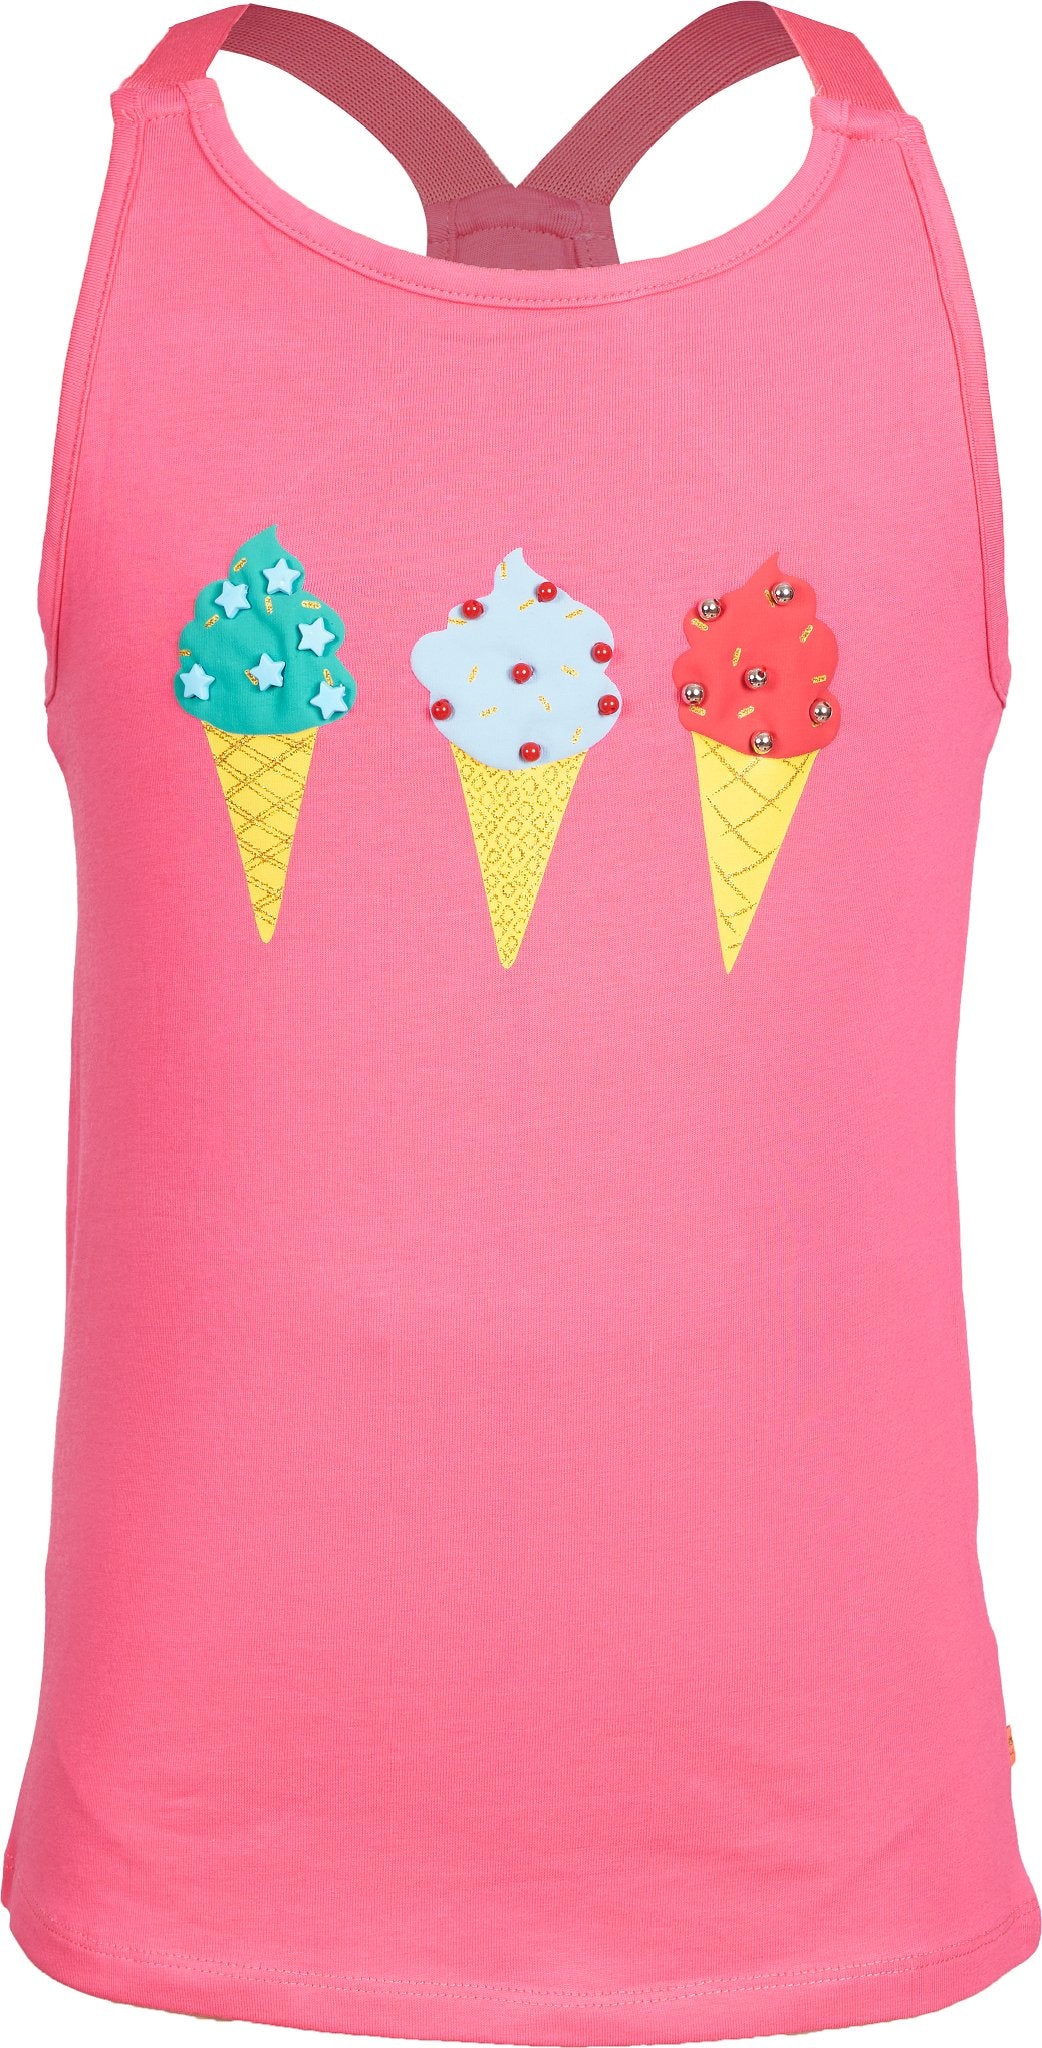 Meisjes Singlet icecream van Someone in de kleur Pink in maat 140.